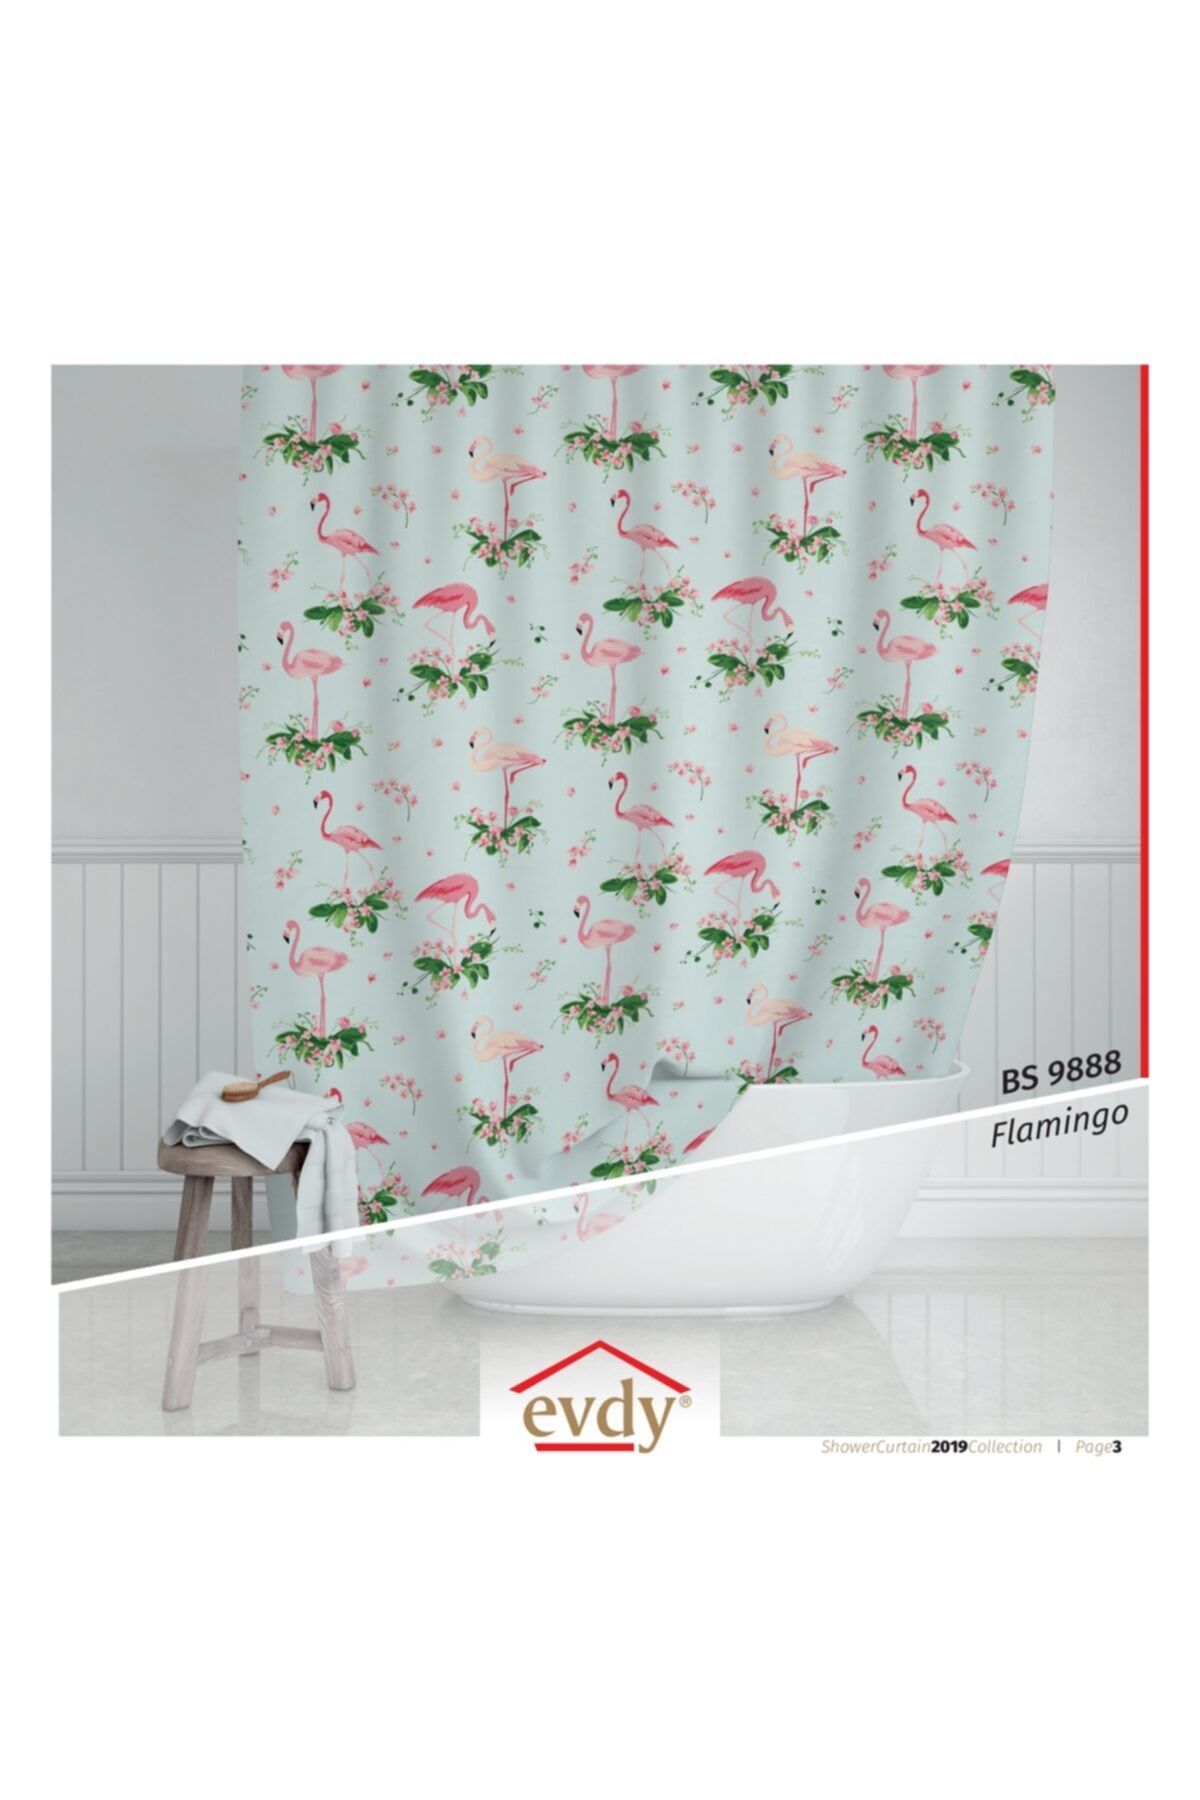 Evdy Duş Perdesi Çamaşır Makinesi Örtüsü Takım 9888 Flamingo Çift Kanat 2x100x200cm